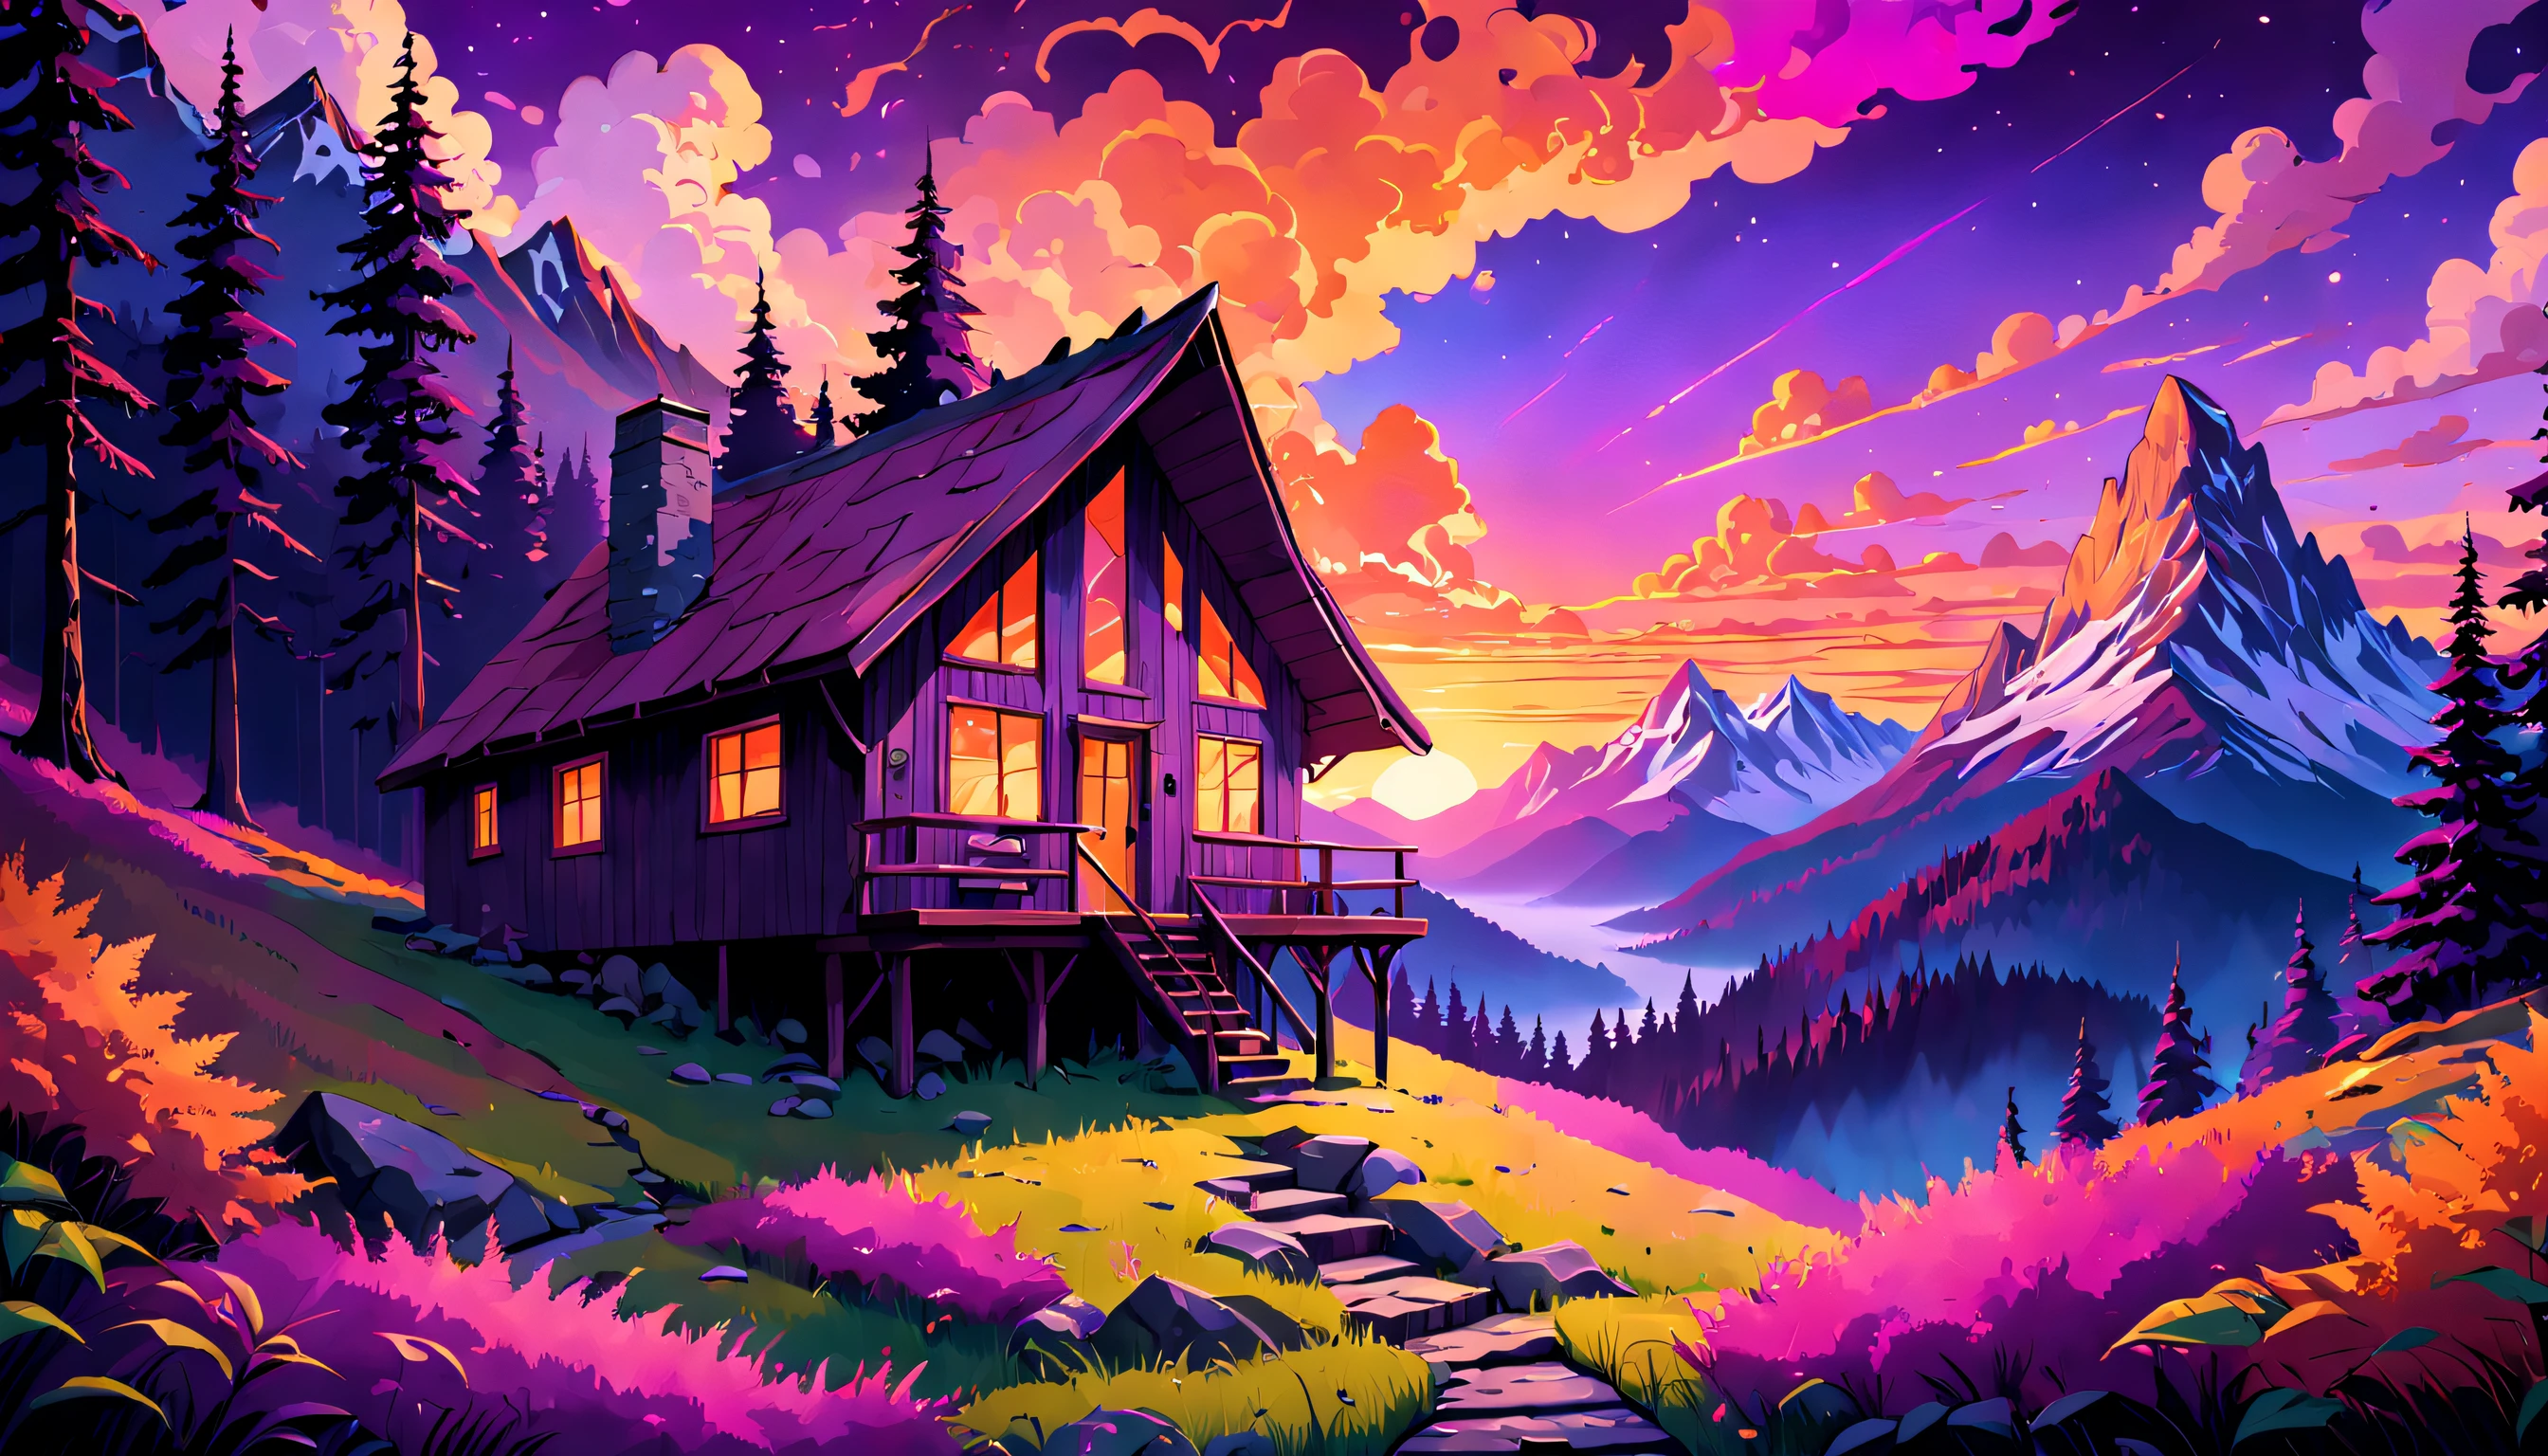 Mystérieuse cabane de montagne nichée au milieu d’une, Forêts psychédéliques, avec un coucher de soleil à couper le souffle projetant des, teintes chaudes de violet, rose et orange, créant une atmosphère de curiosité et d’intrigue.